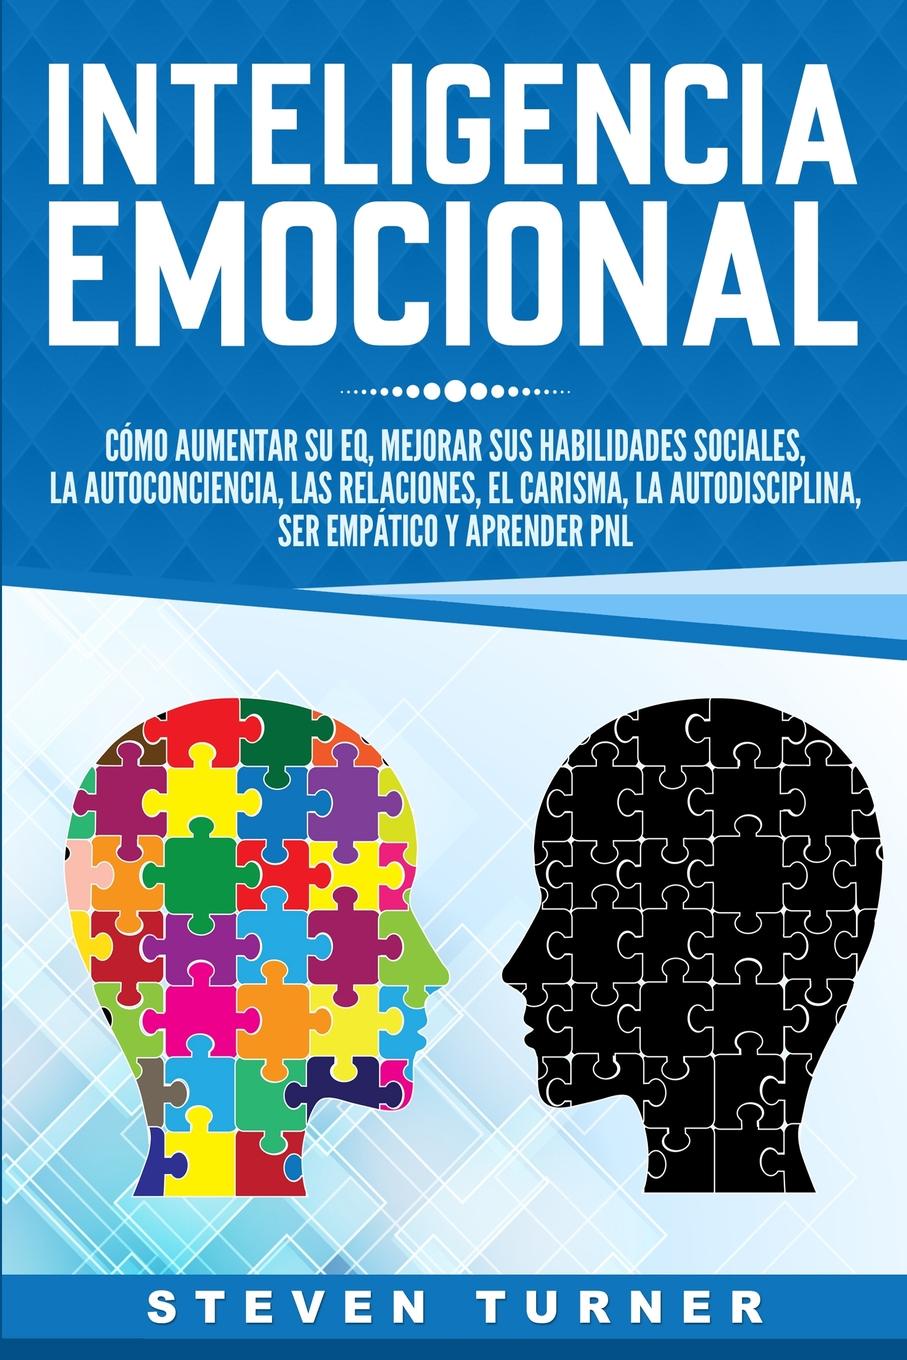 Inteligencia Emocional. Como aumentar su EQ, mejorar sus habilidades sociales, la autoconciencia, las relaciones, el carisma, la autodisciplina, ser empatico y aprender PNL